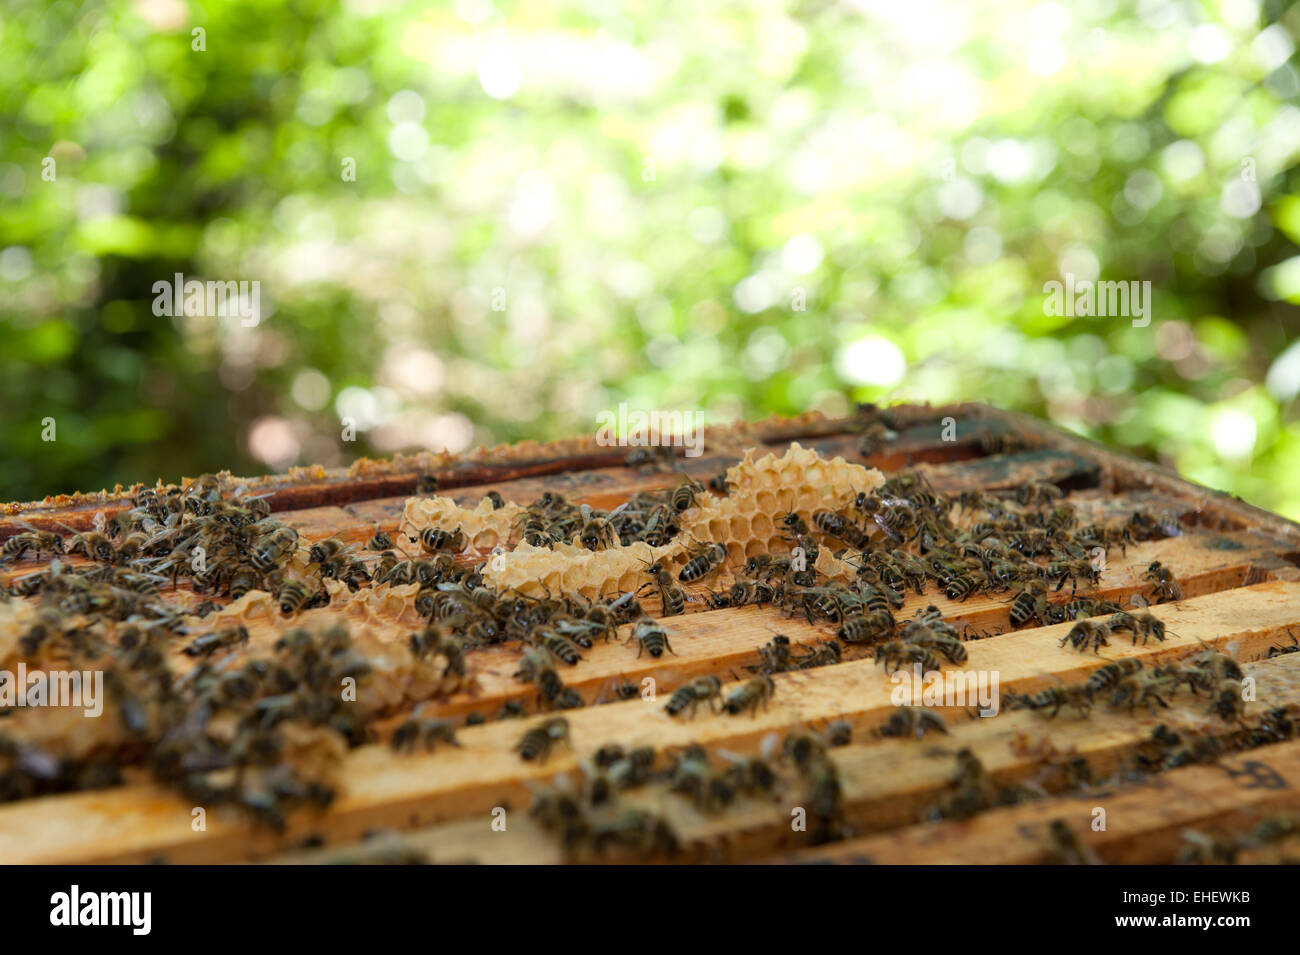 Honeybees Stock Photo